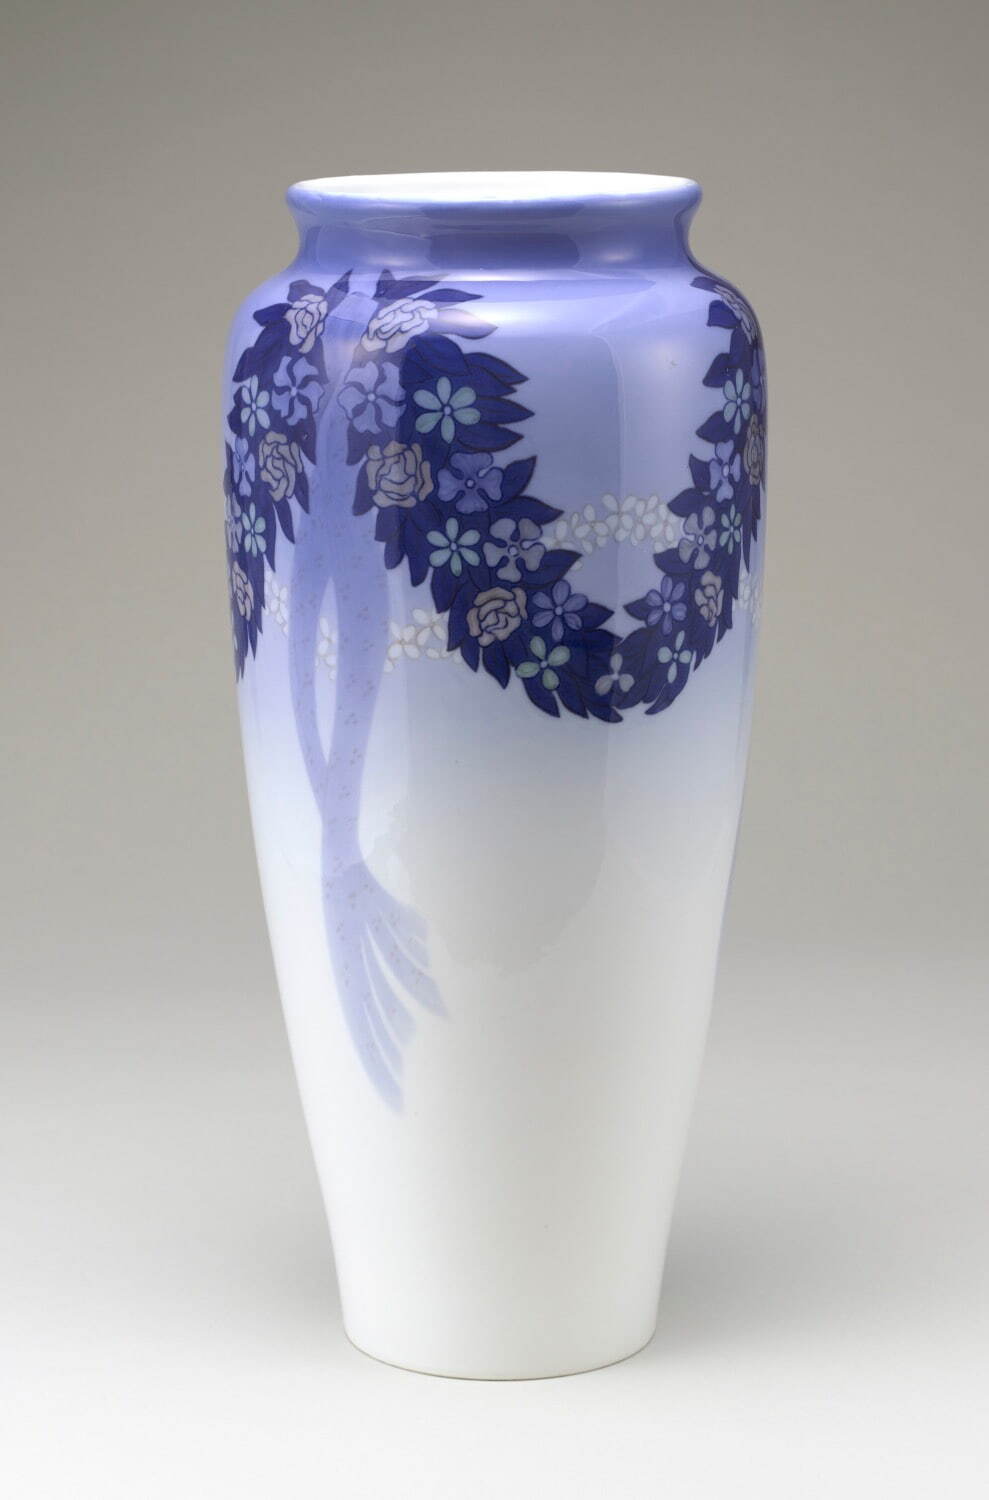 《花飾文花瓶》 1910年 ヤニ ー・ソフィー・メイヤーによるユニカ
ロイヤル コペンハーゲン 塩川コレクション